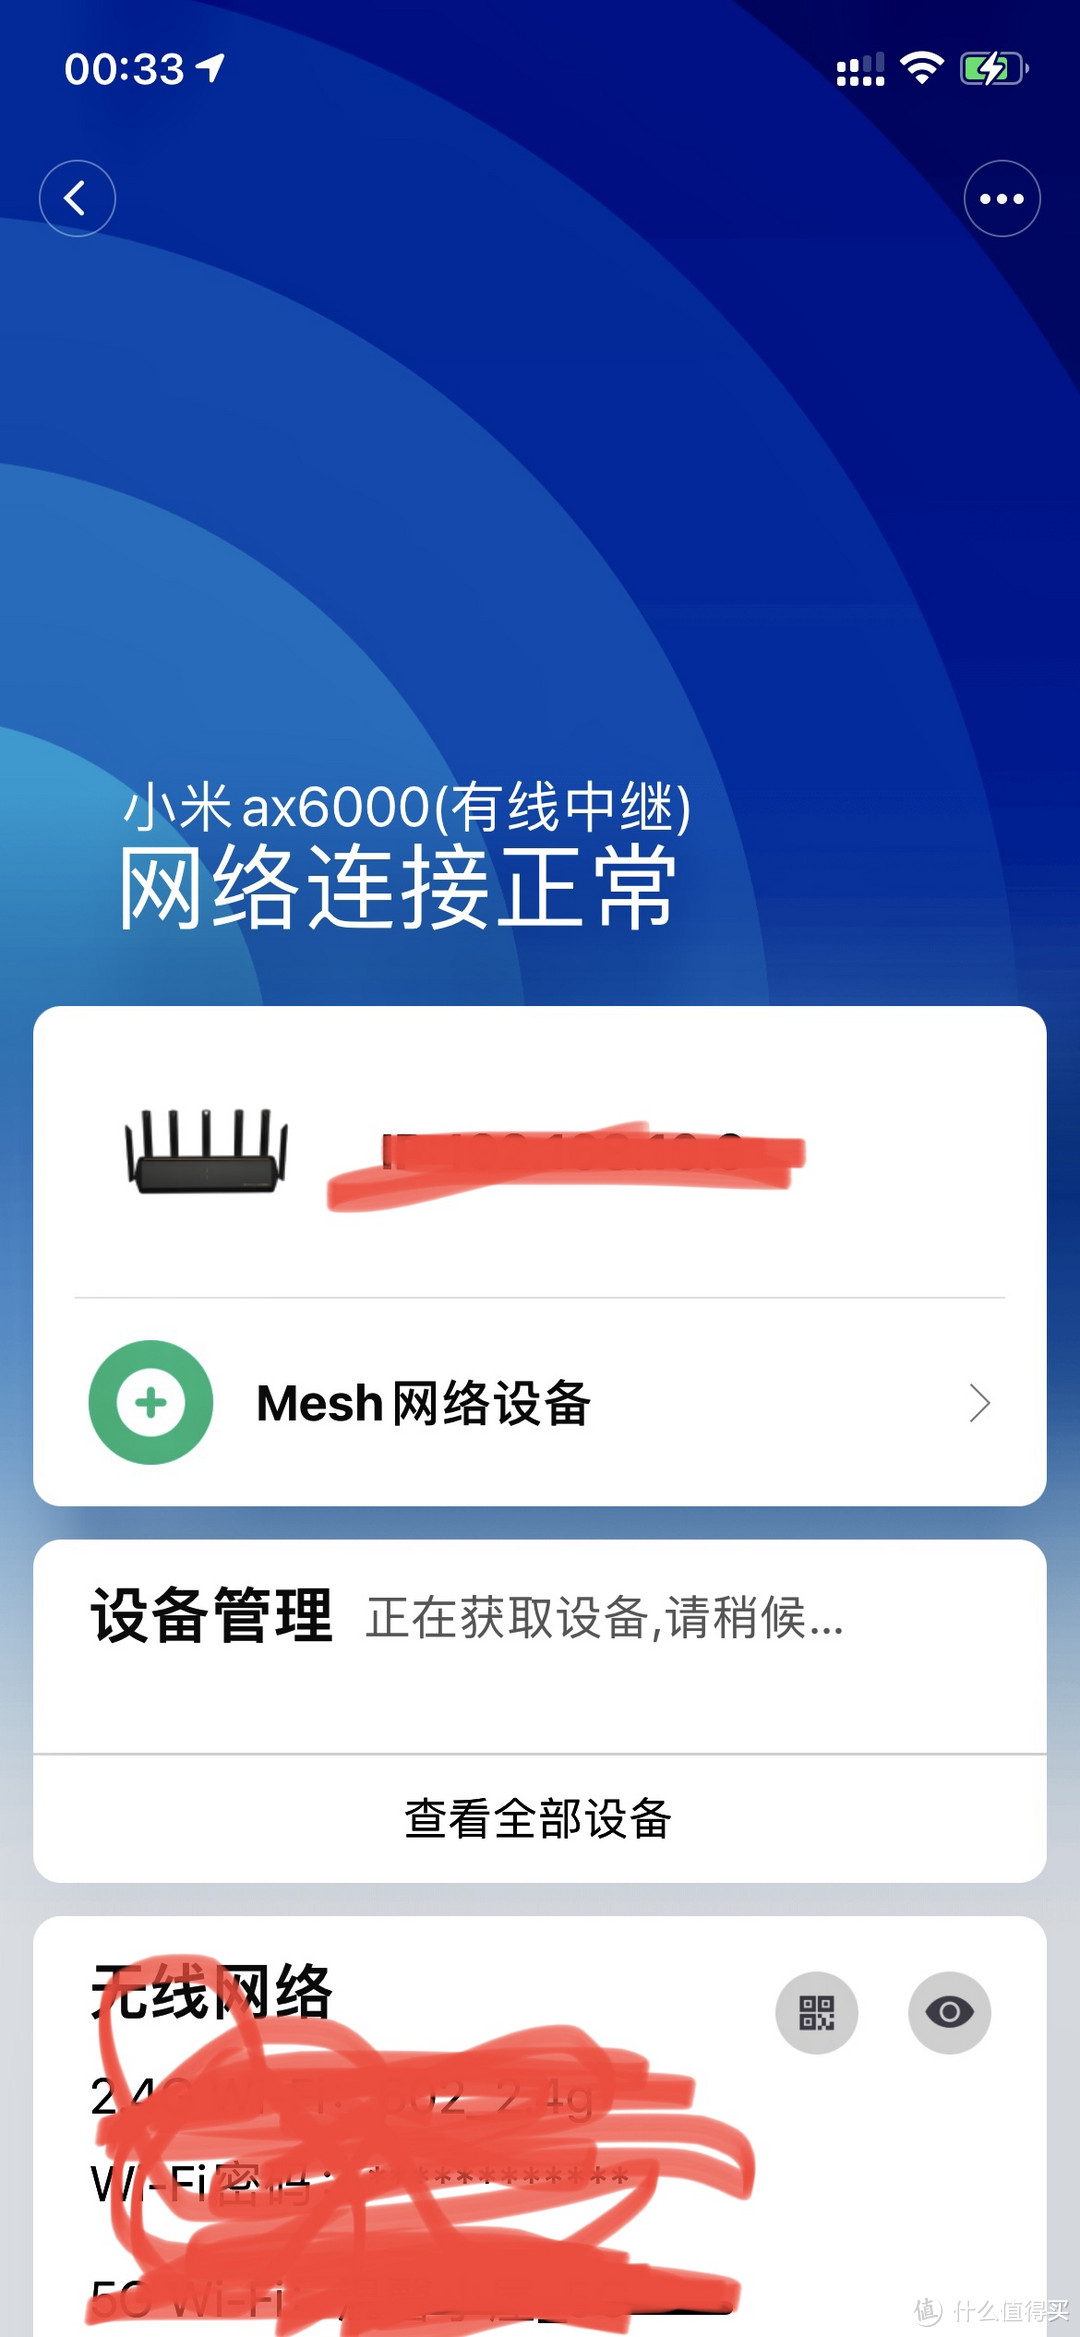 小米ac6000+ac3600+软路由ikuai在有线中继模式下mesh组网，米家app无法查看mesh子路由的问题请教。